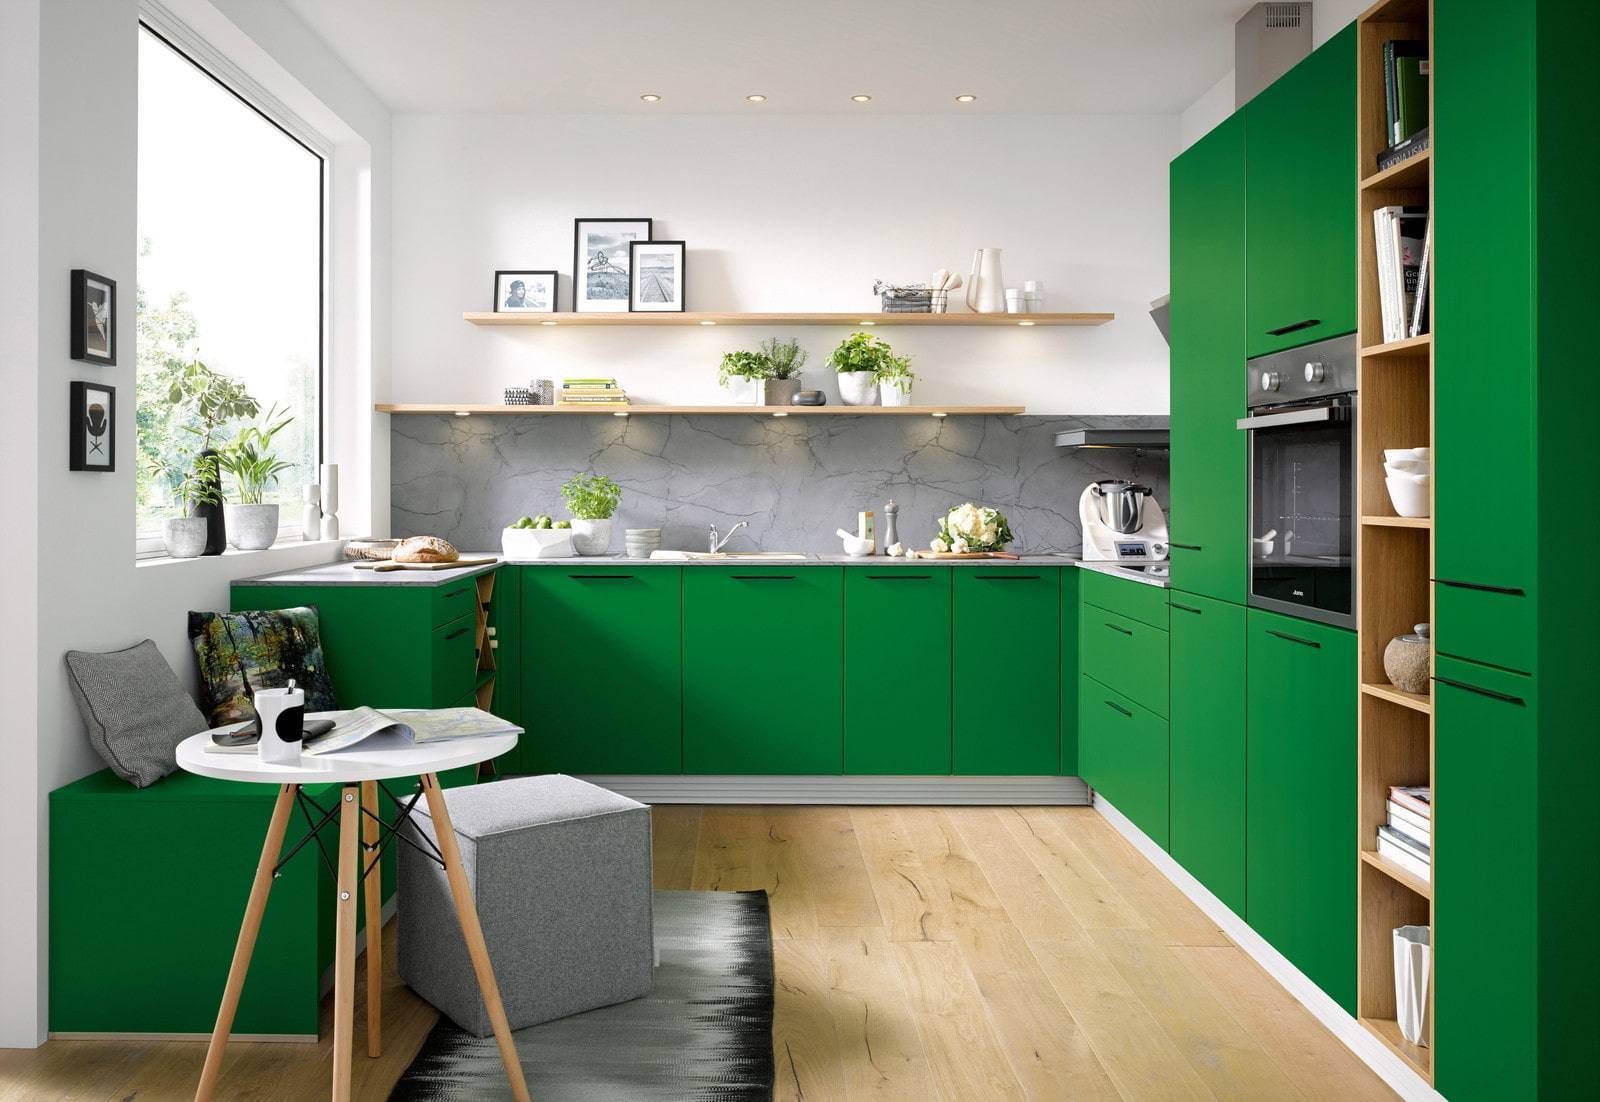 Дизайн кухни зеленого цвета — 1 фото современных примеров оформления кухни в зеленом